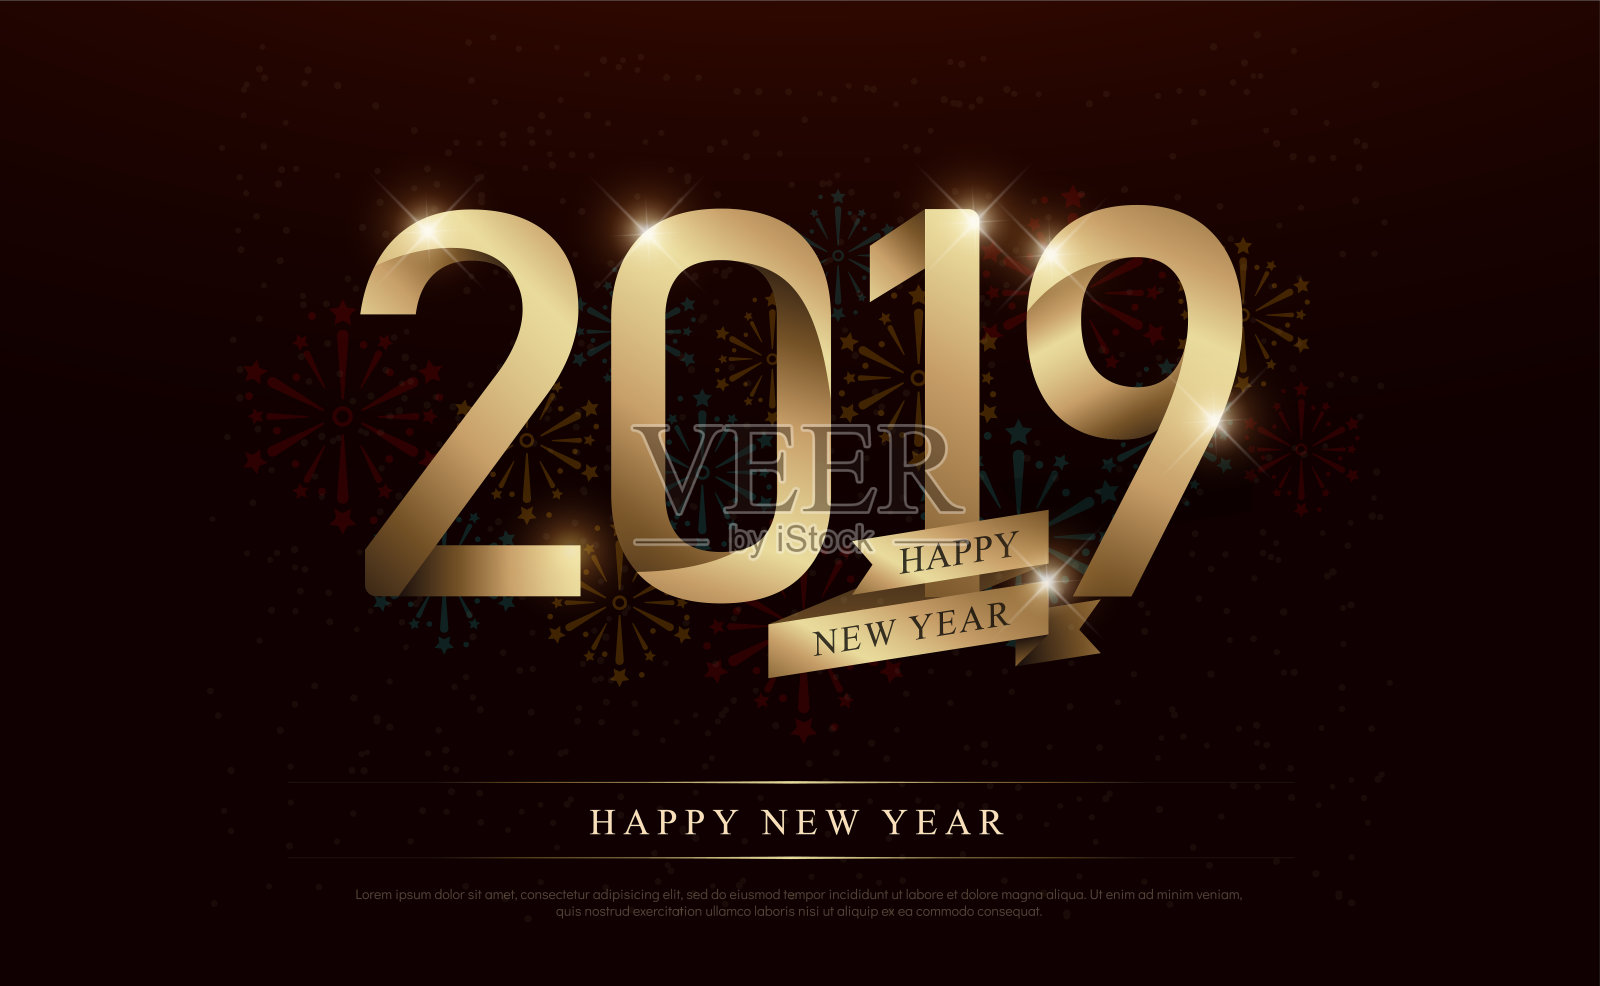 新年快乐2019年庆祝金色数字和金色丝带与烟花在黑暗的背景。矢量图设计模板素材